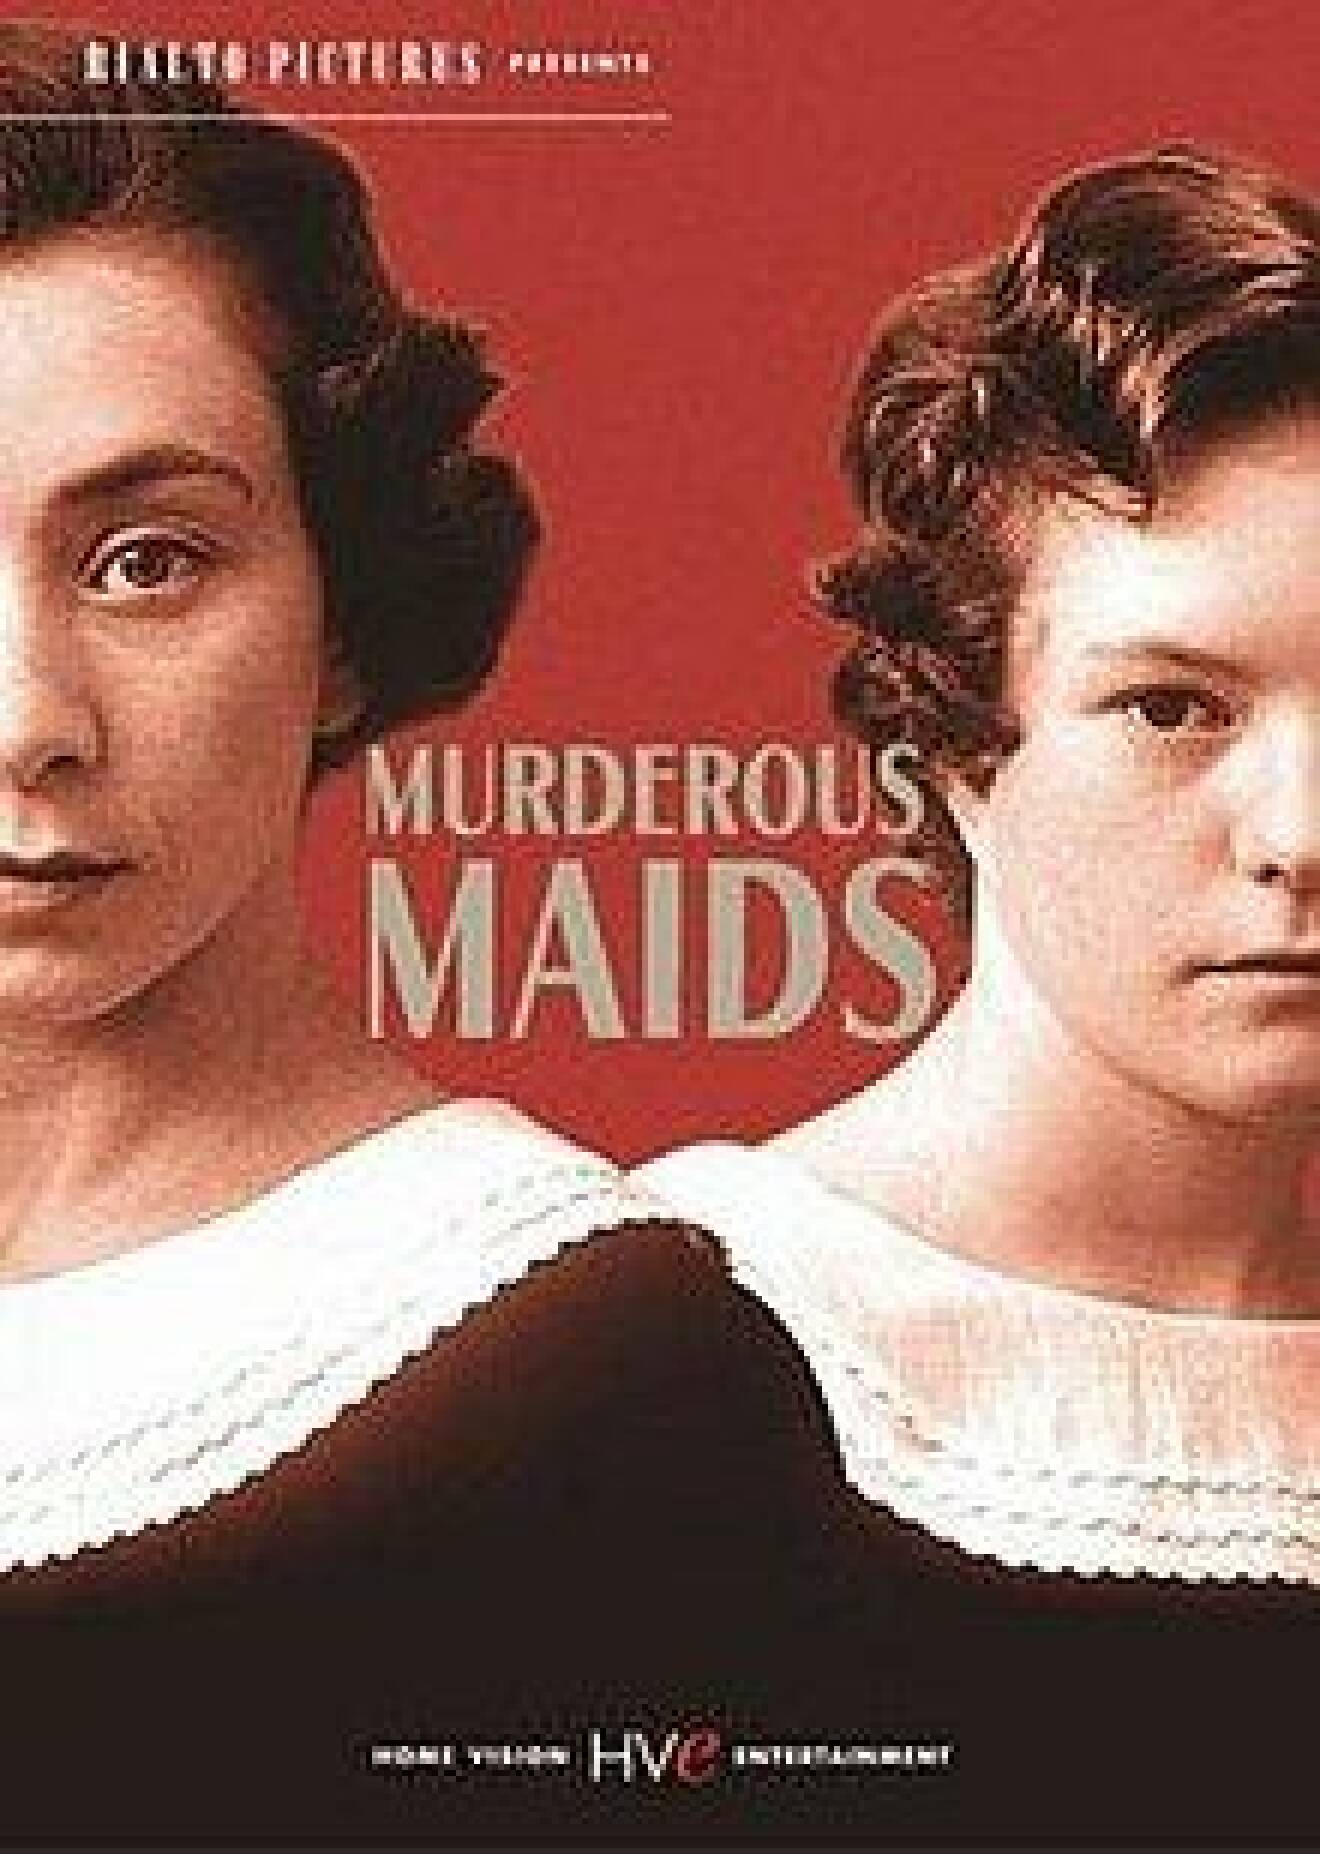 filmen Murderous maids handlar om systrarna Papin